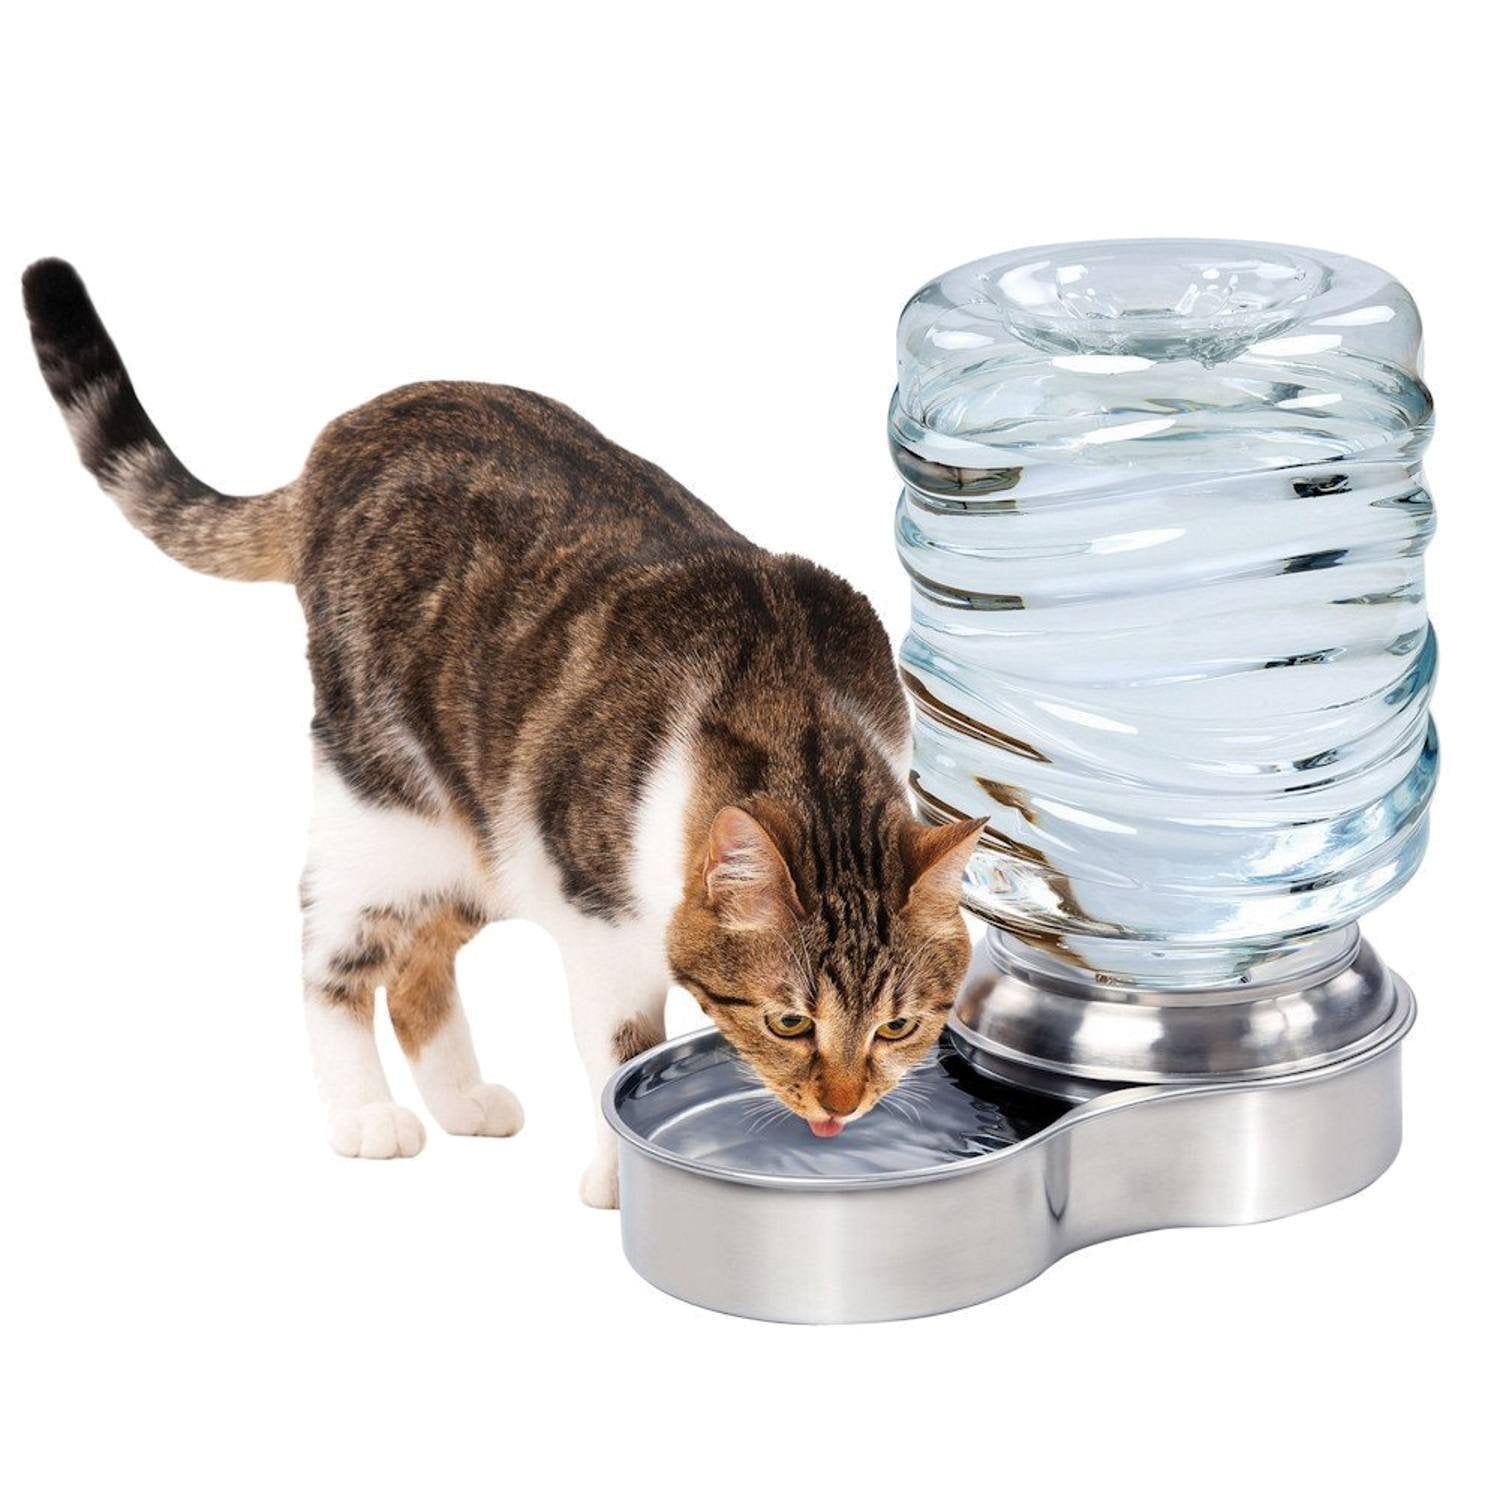 Поильник для кошек. Поилка для кота. Автоматическая поилка для кошек. Фонтанчик для кошек. Поилка фонтан для кошек.